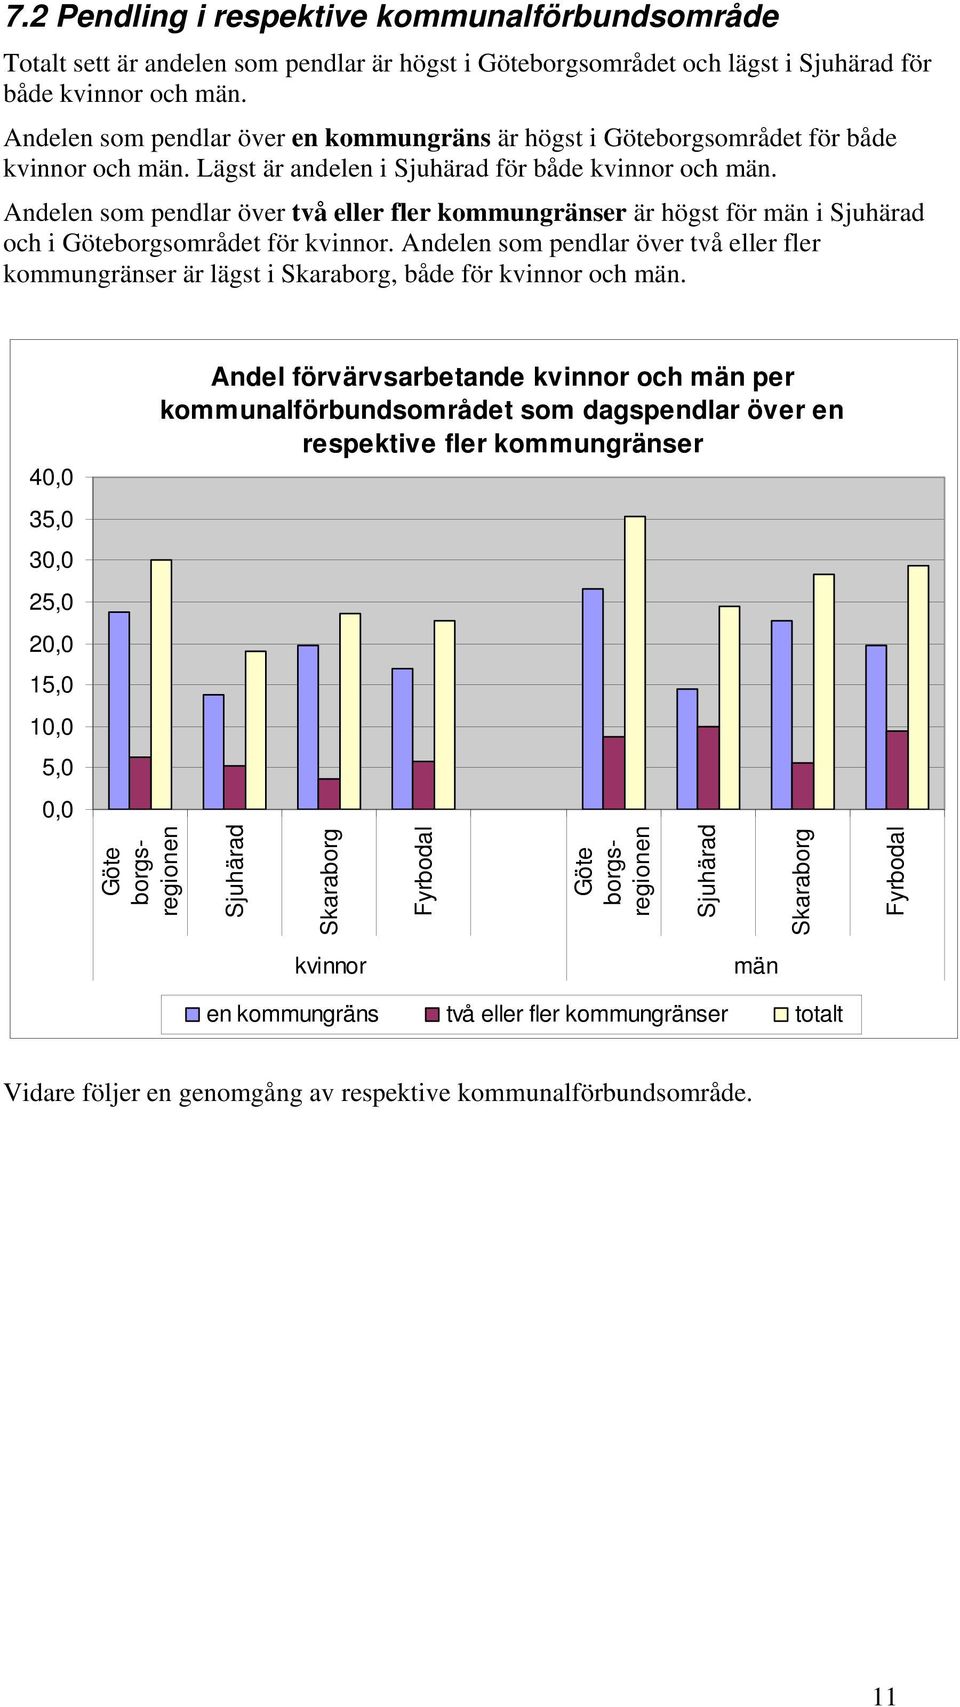 Andelen som pendlar över två eller fler kommungränser är högst för män i Sjuhärad och i Göteborgsområdet för kvinnor.